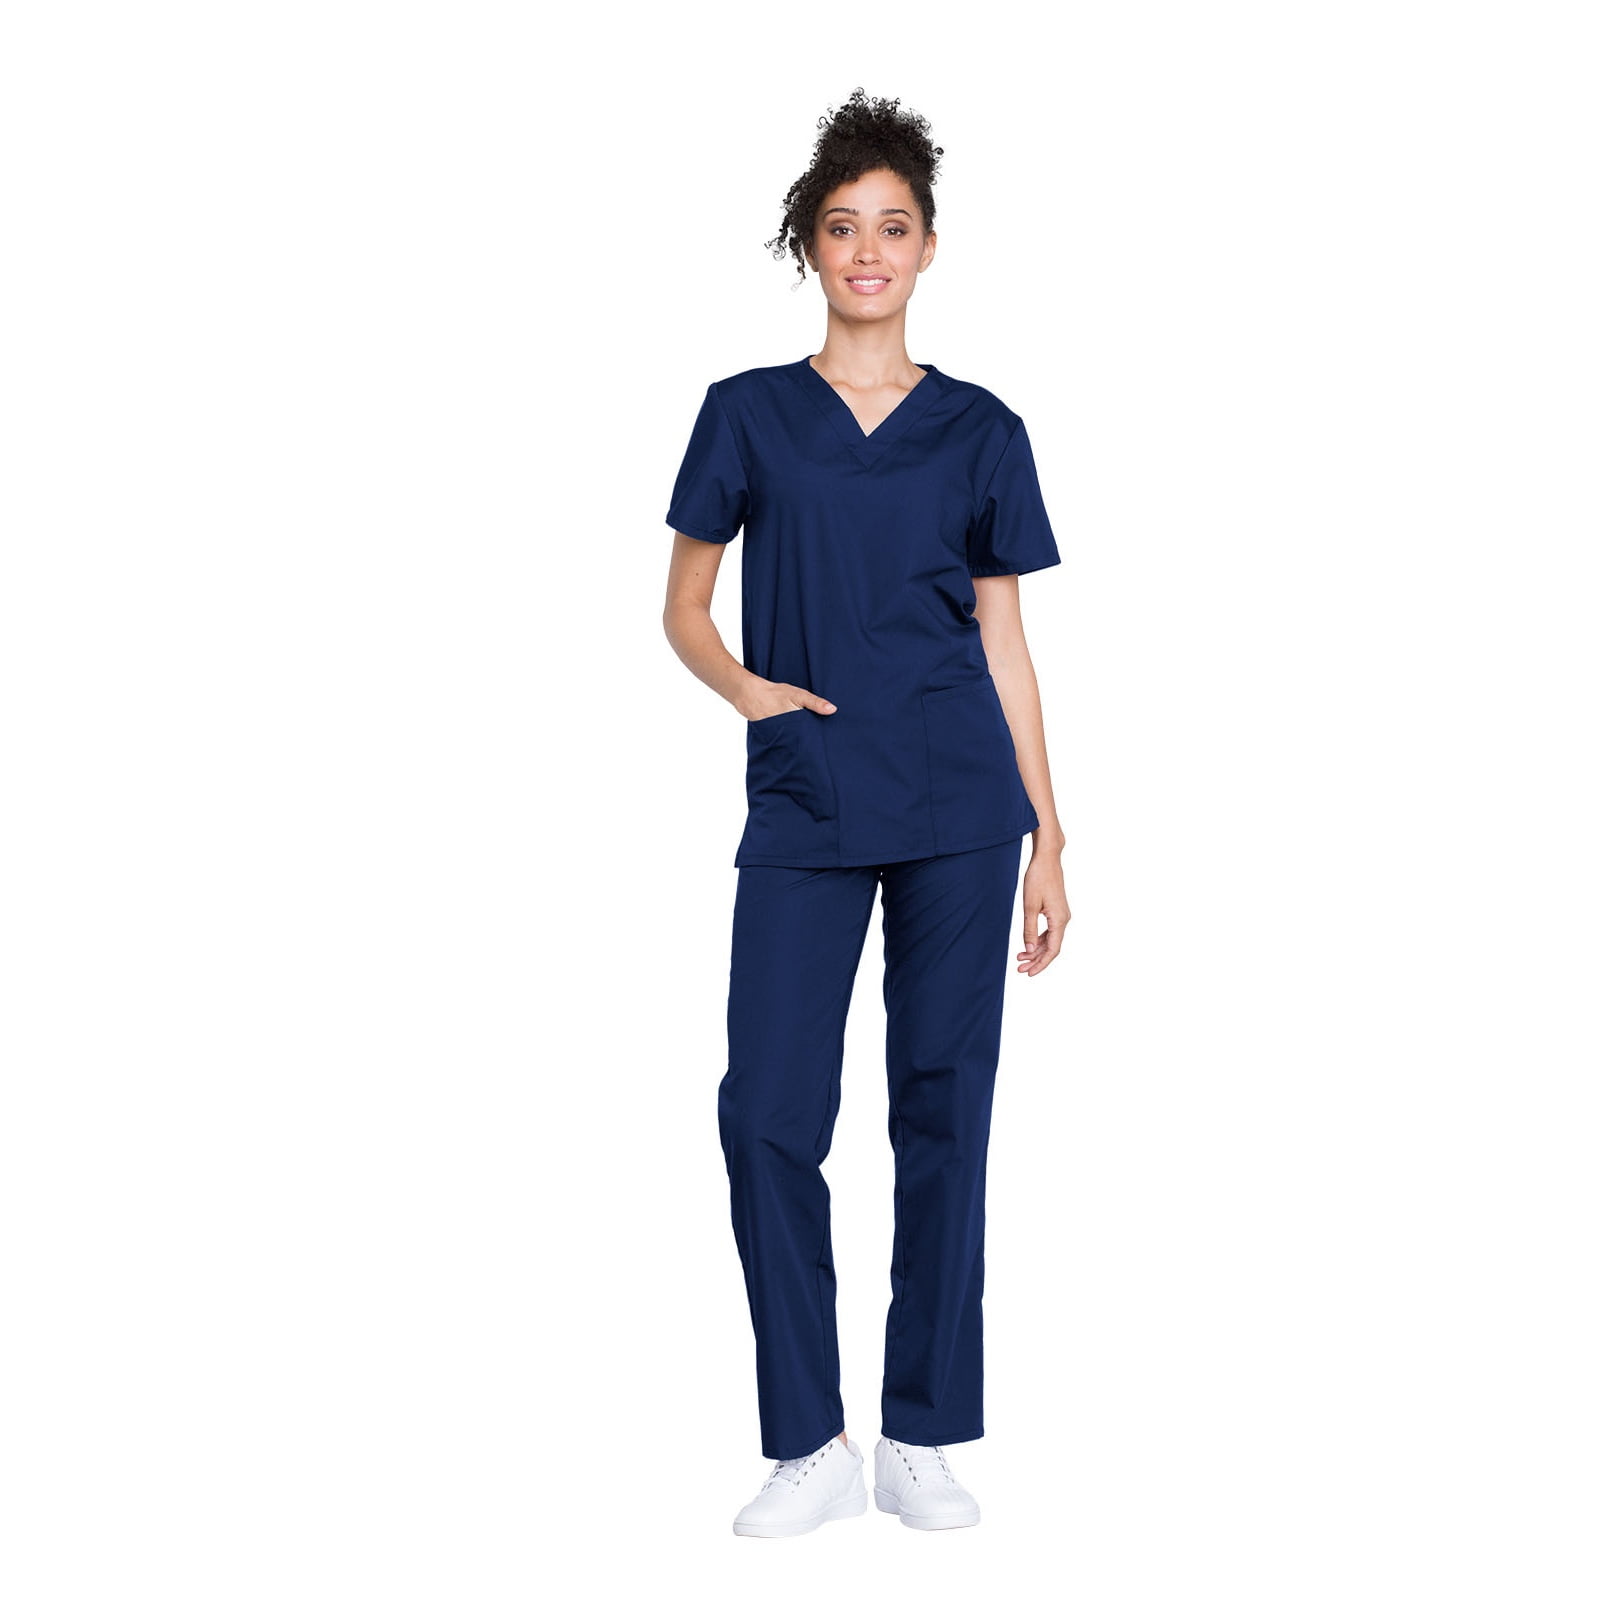 Pijama sanitario mujer Cherokee Original de color azul marino - comprar uniformes sanitarios en tienda MedicalRopa